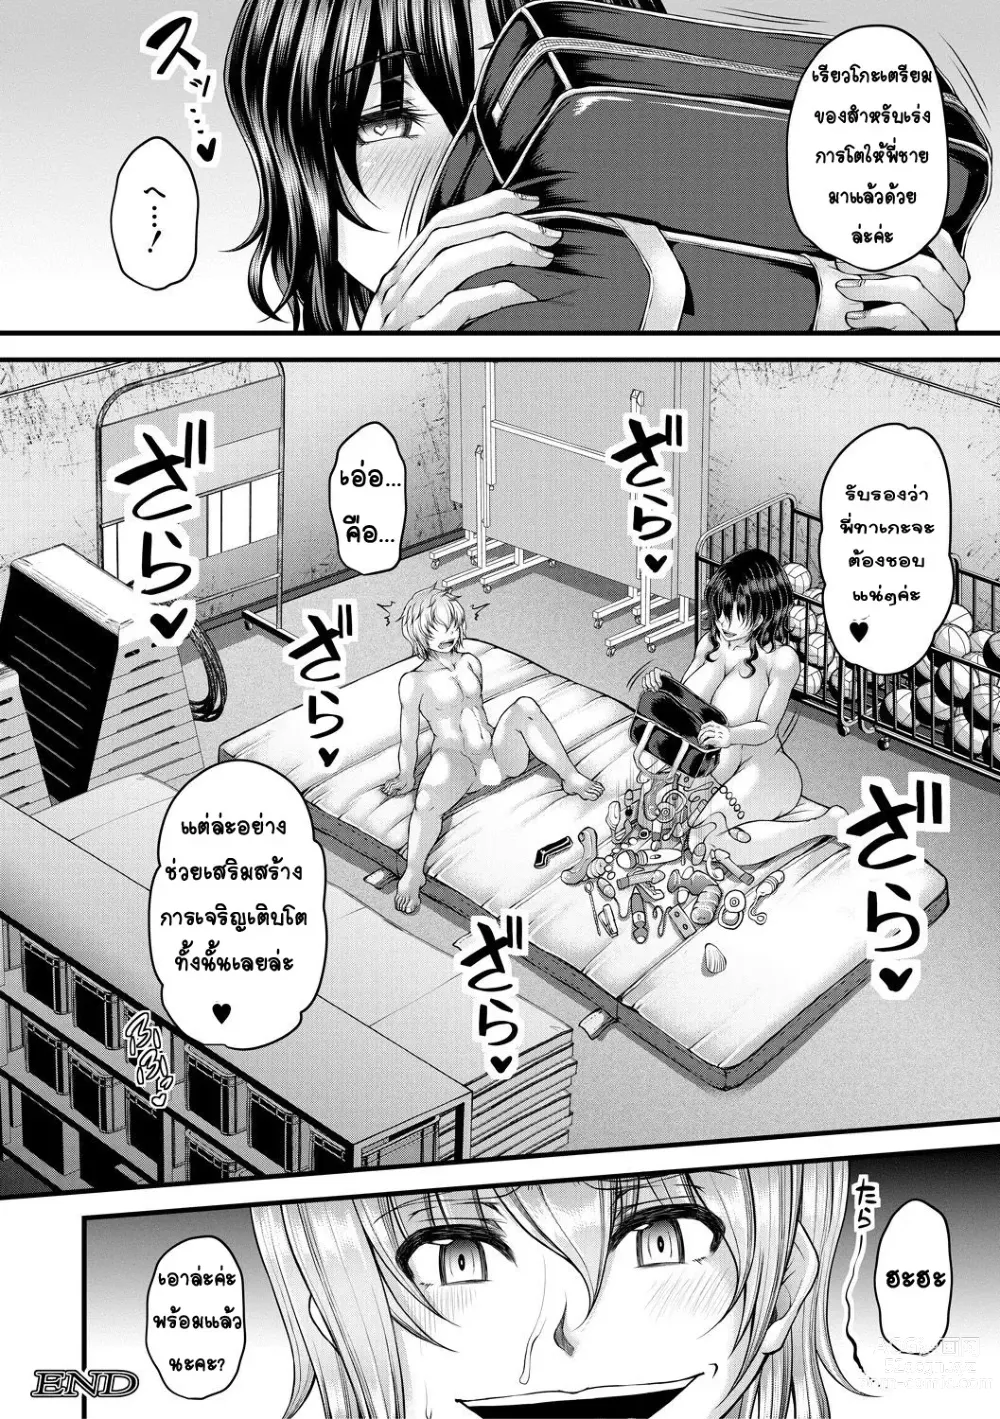 Page 46 of manga kakitsubata Kanae yoru onna ryushi wa han me rarenai 1